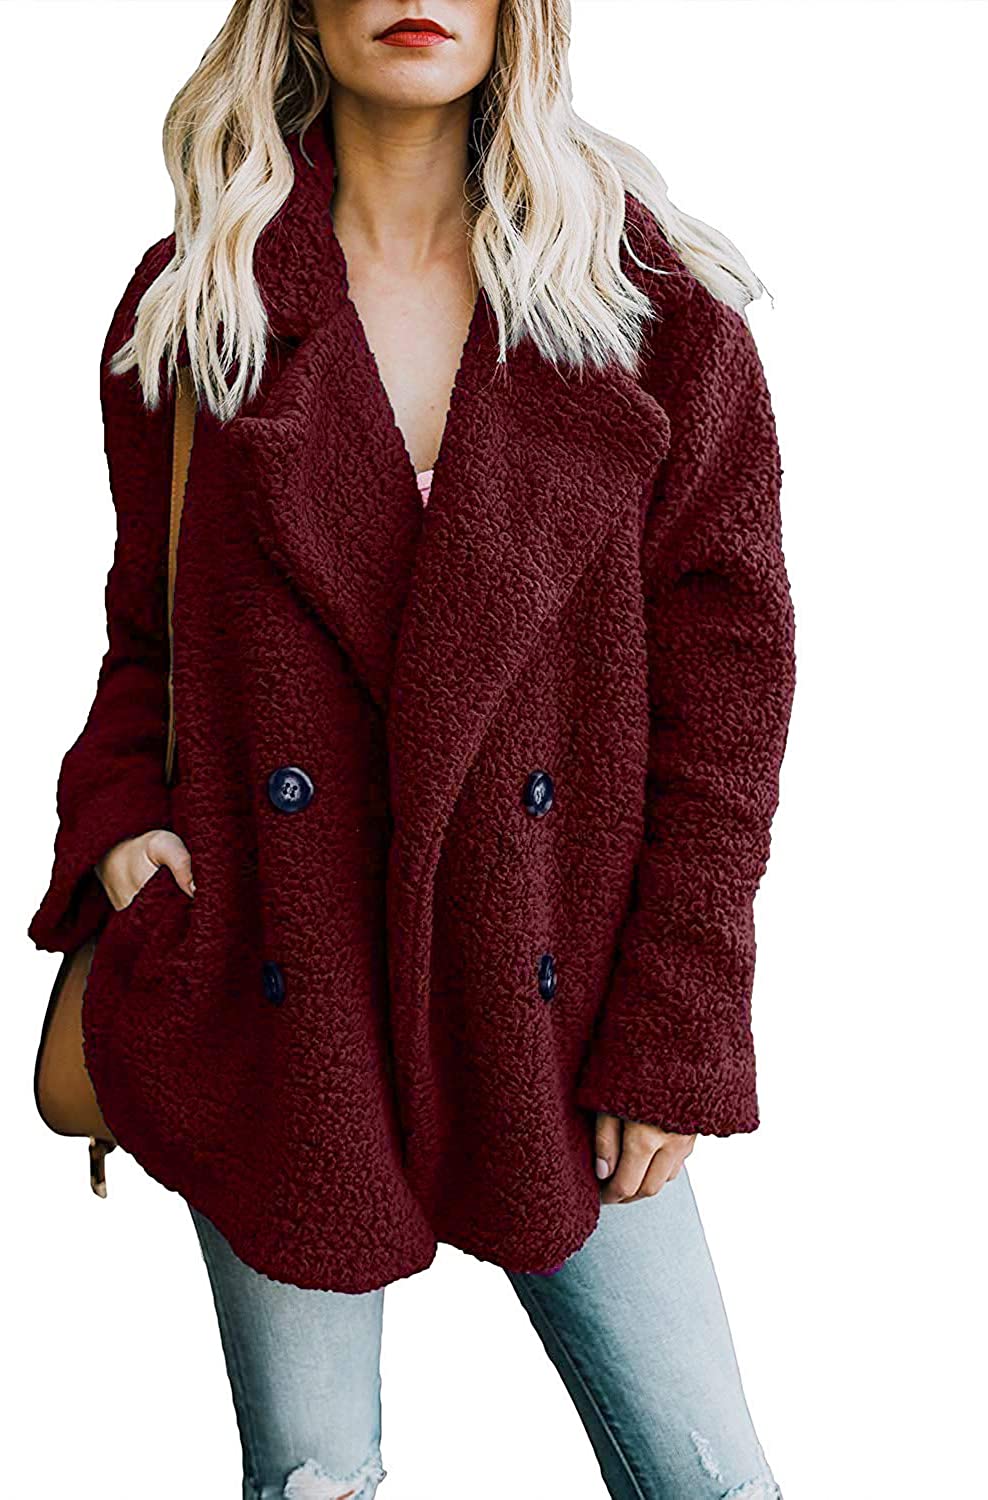 Zeagoo Women's Faux Fur Coat Fuzzy Cardigan Warm Fleece Jacket Long Sleeve Oversized Winter Outwear Pockets Coat